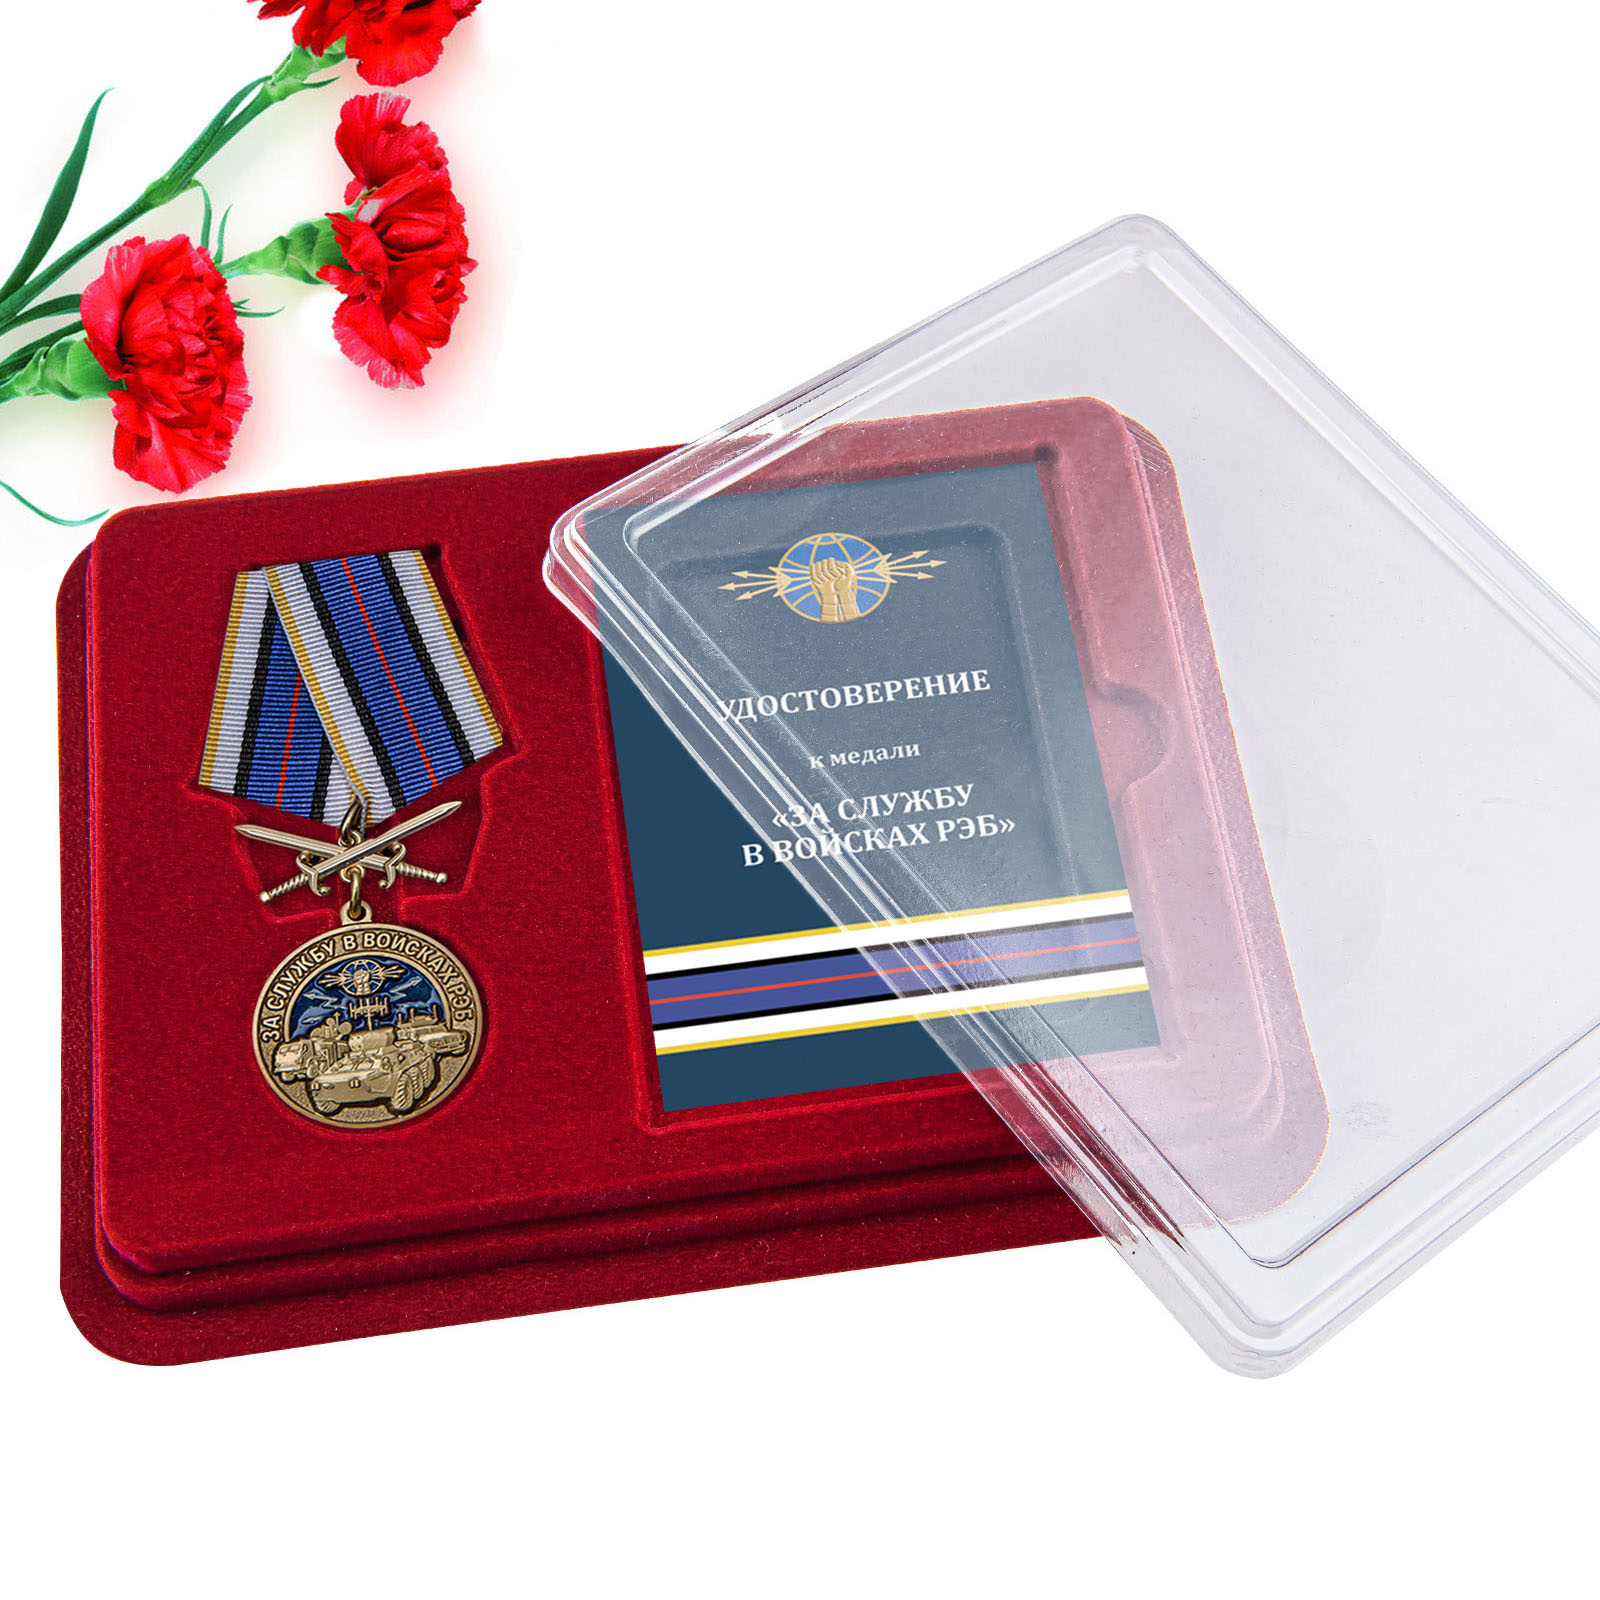 Купить медаль За службу в войсках РЭБ онлайн в подарок